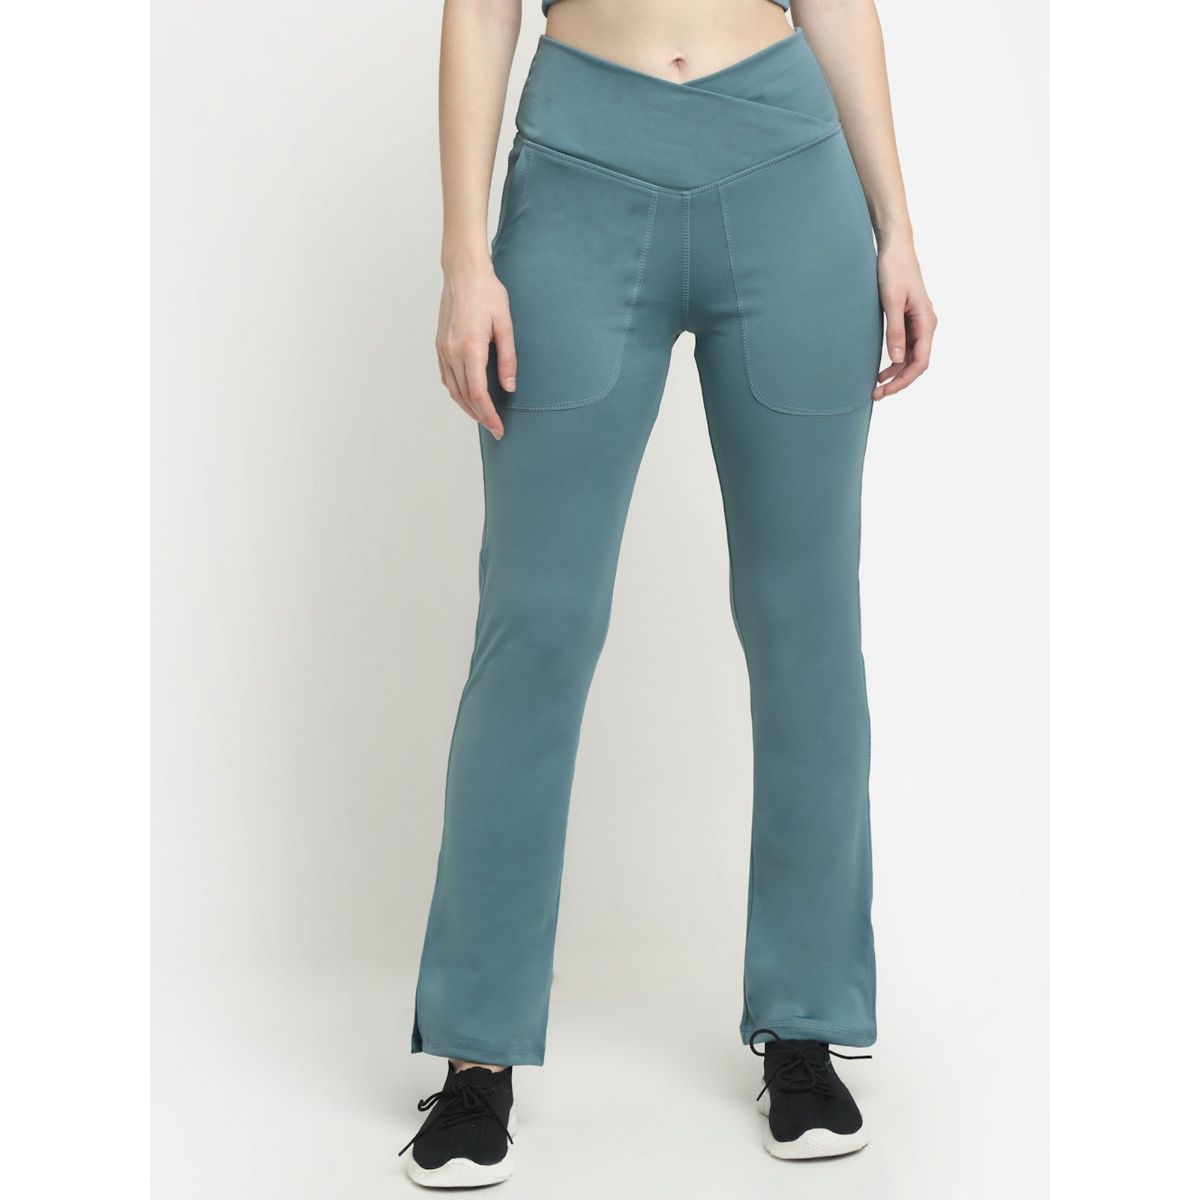 Buy EVERDION Blue Crossover Pocket Split Hem Full Length Flare Yoga Pants  Online